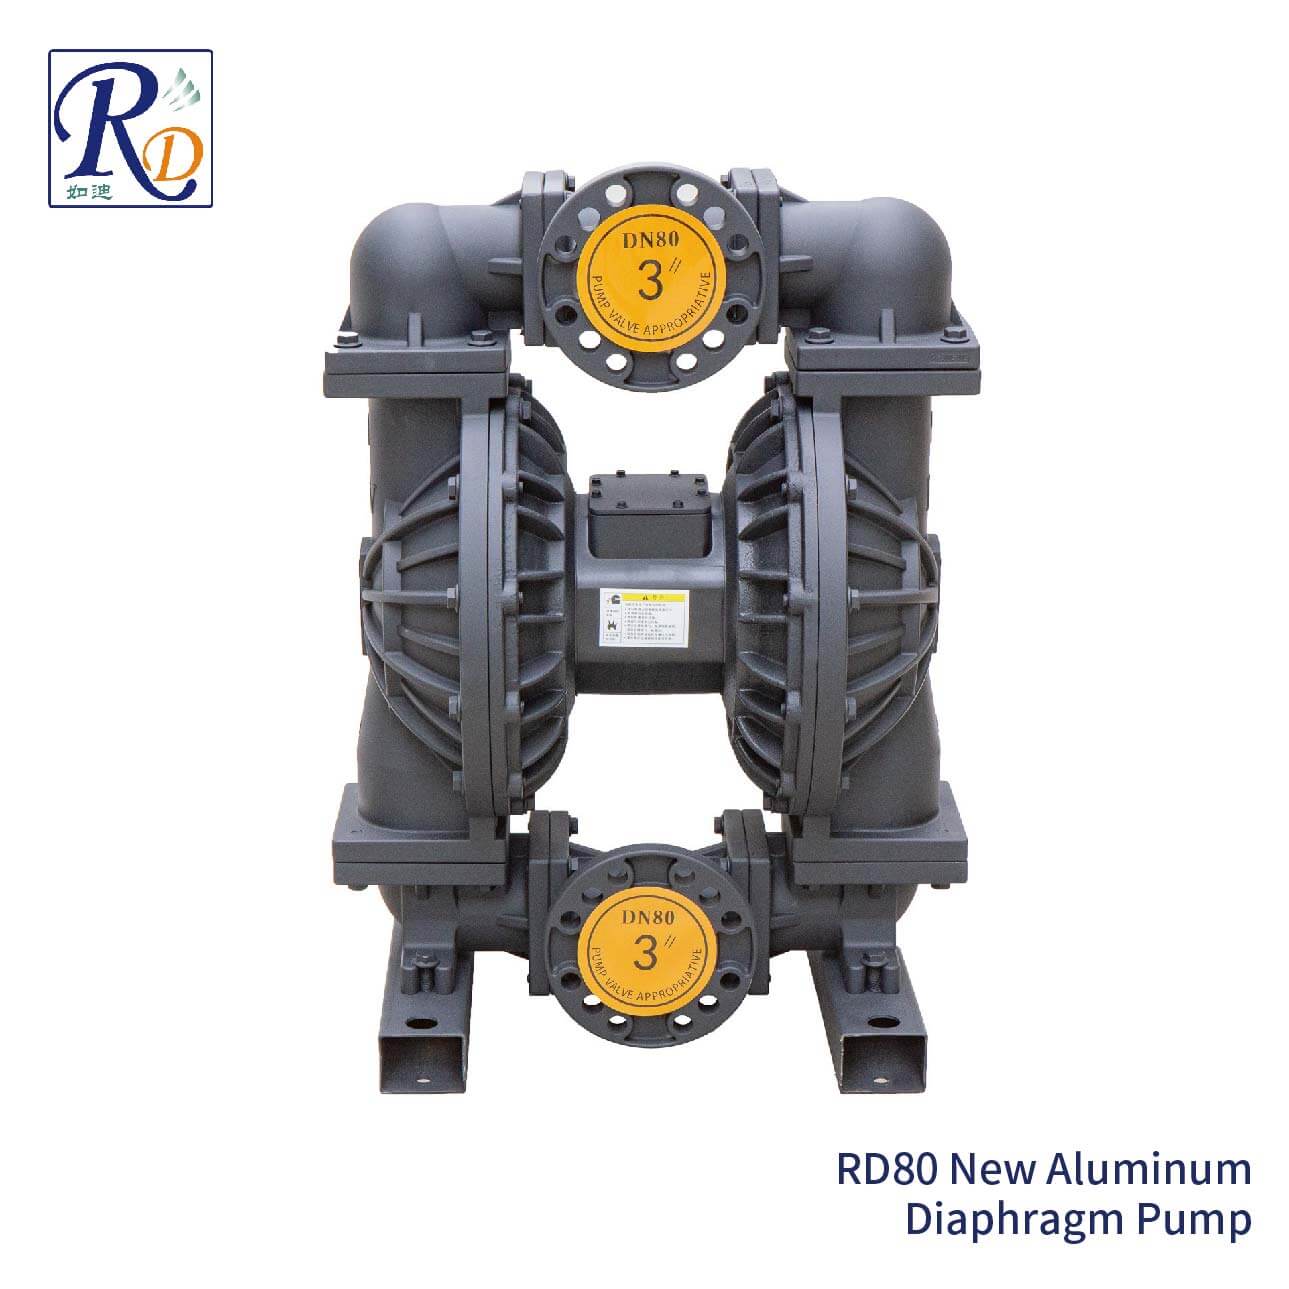 RD80 New Aluminum Diaphragm Pump